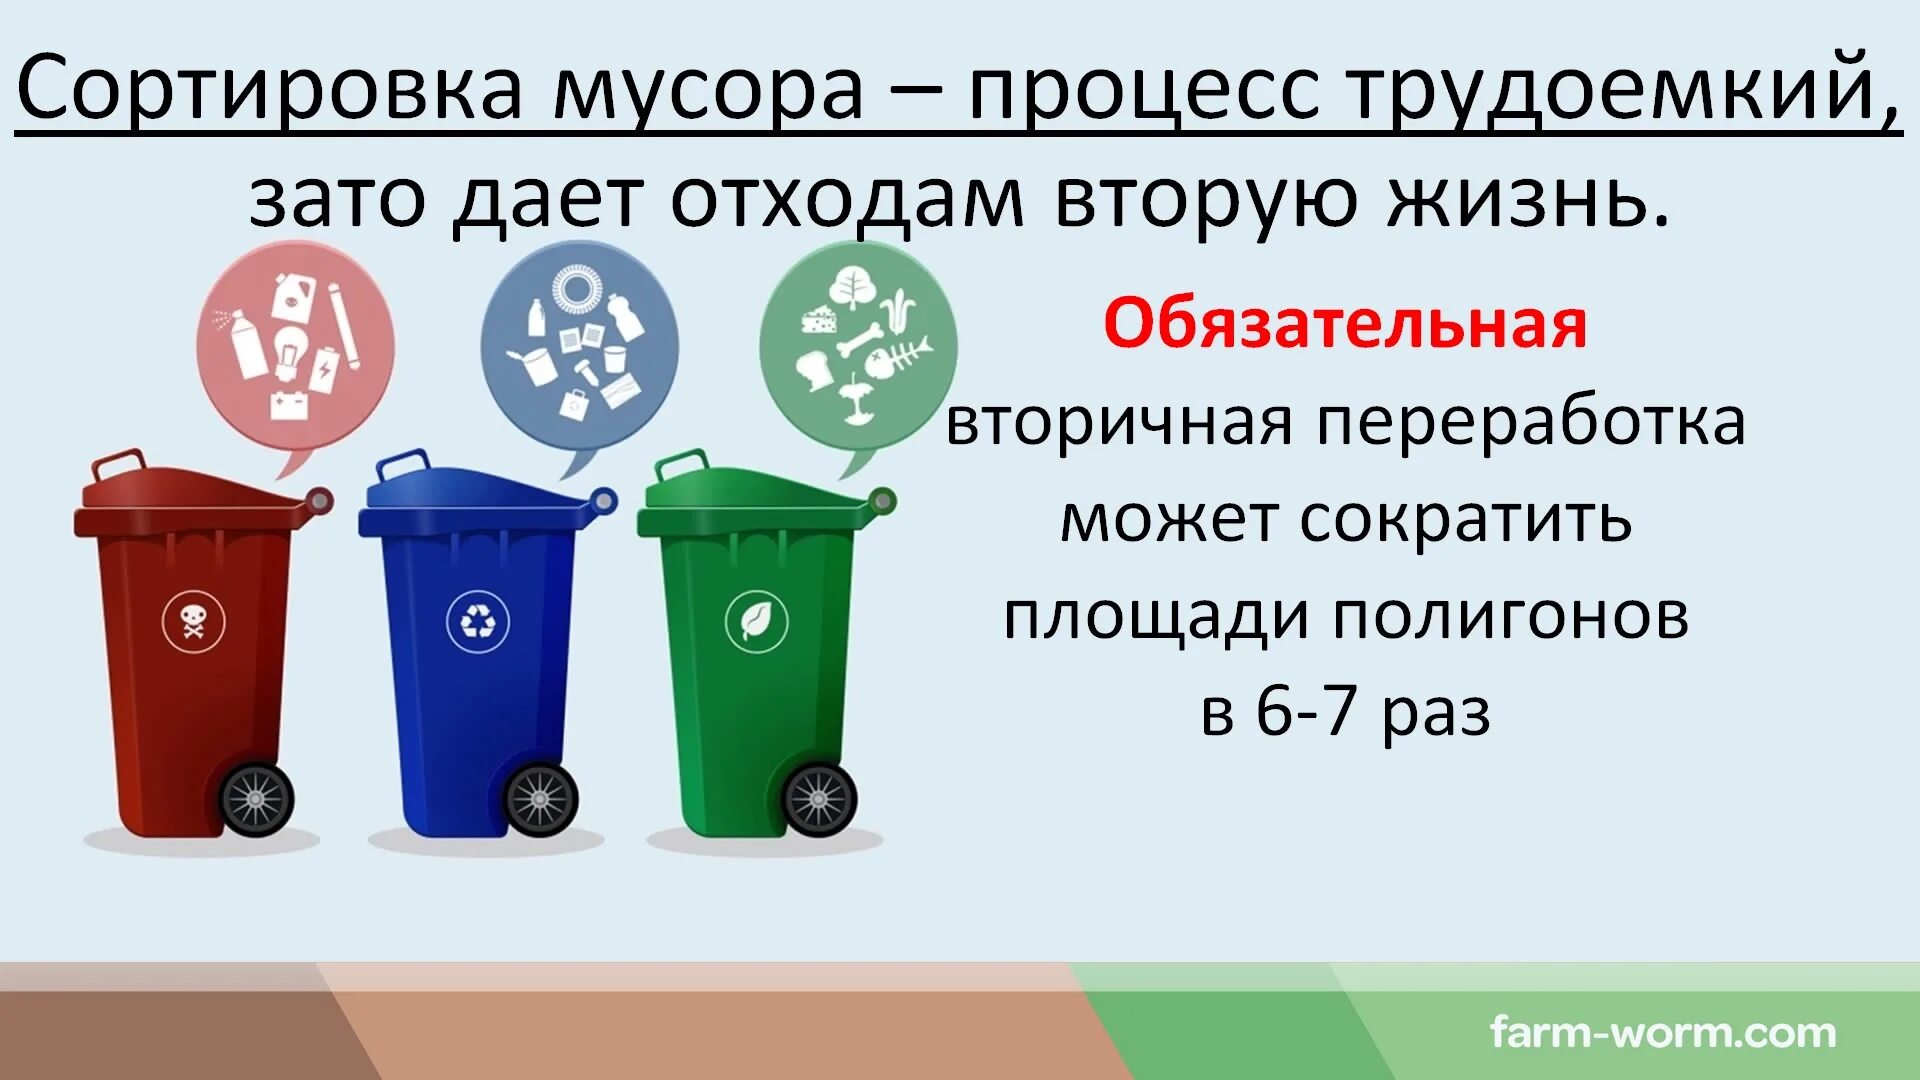 Классификация утилизации отходов. Типы бытовых отходов. Типы мусорных отходов.